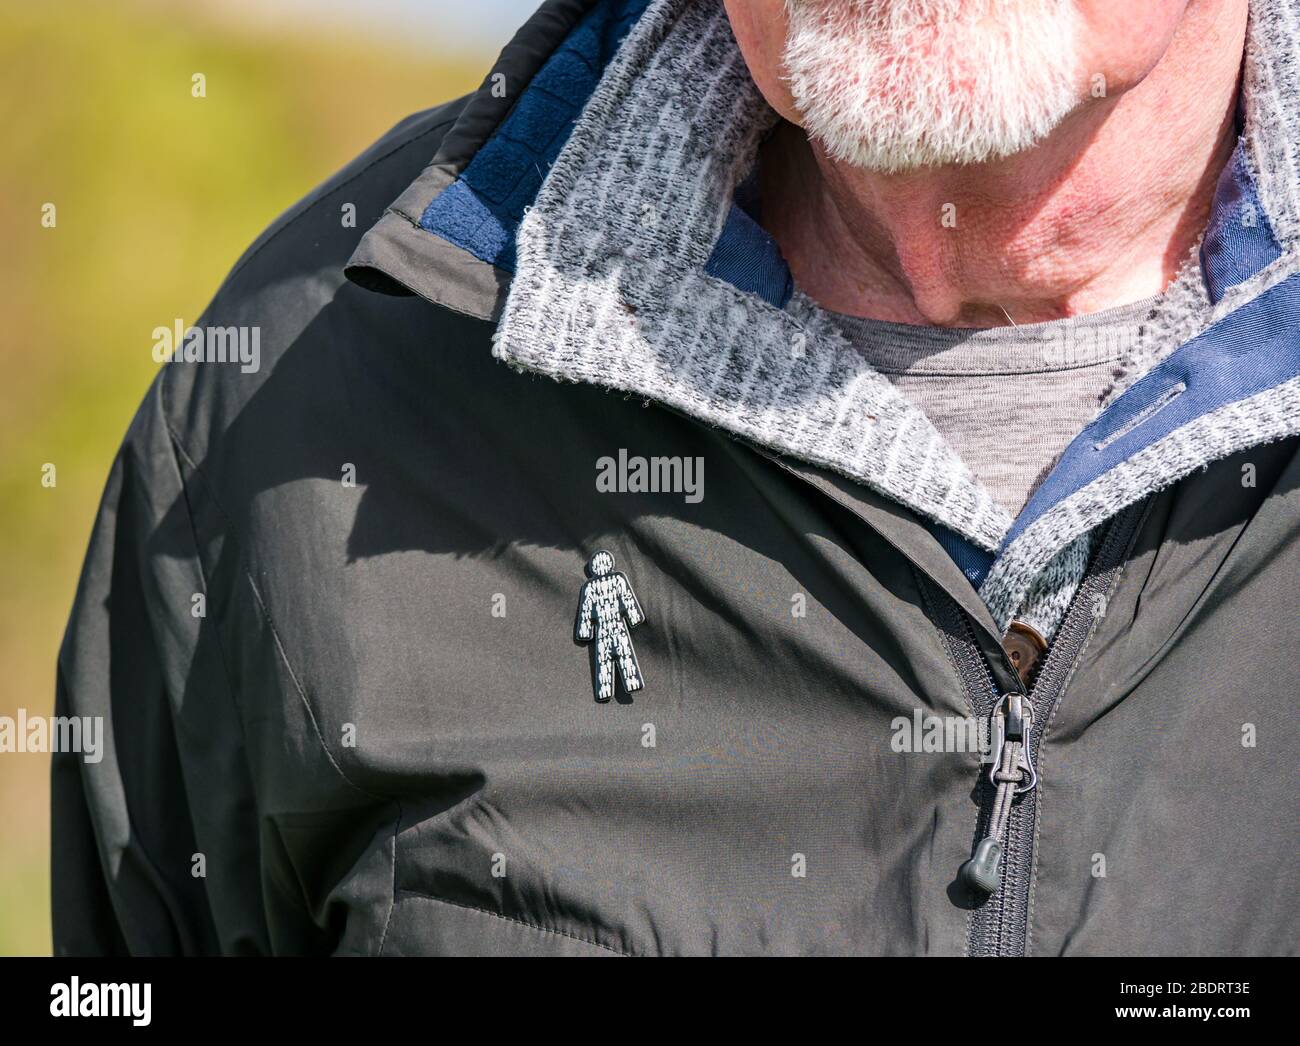 Hombre mayor con barba gris que lleva el pasador de la insignia benéfica del Reino Unido del cáncer de próstata fijado a la chaqueta para aumentar la conciencia de la condición común de la salud, Reino Unido Foto de stock